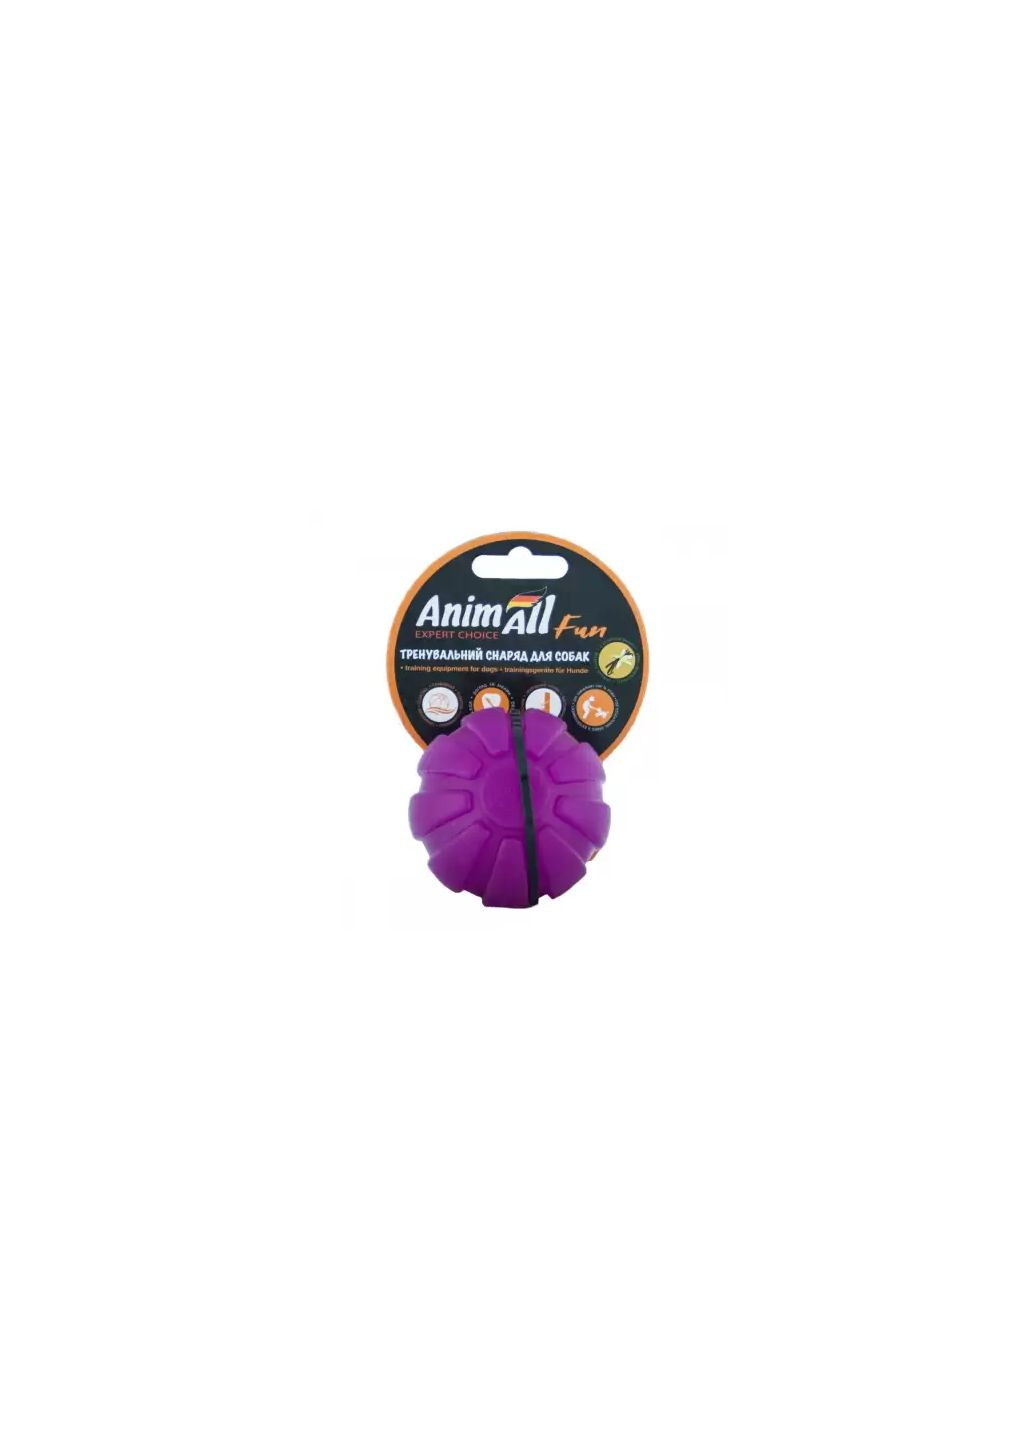 Игрушка Fun тренировочный мяч, фиолетовый, 5 см AnimAll (278309033)